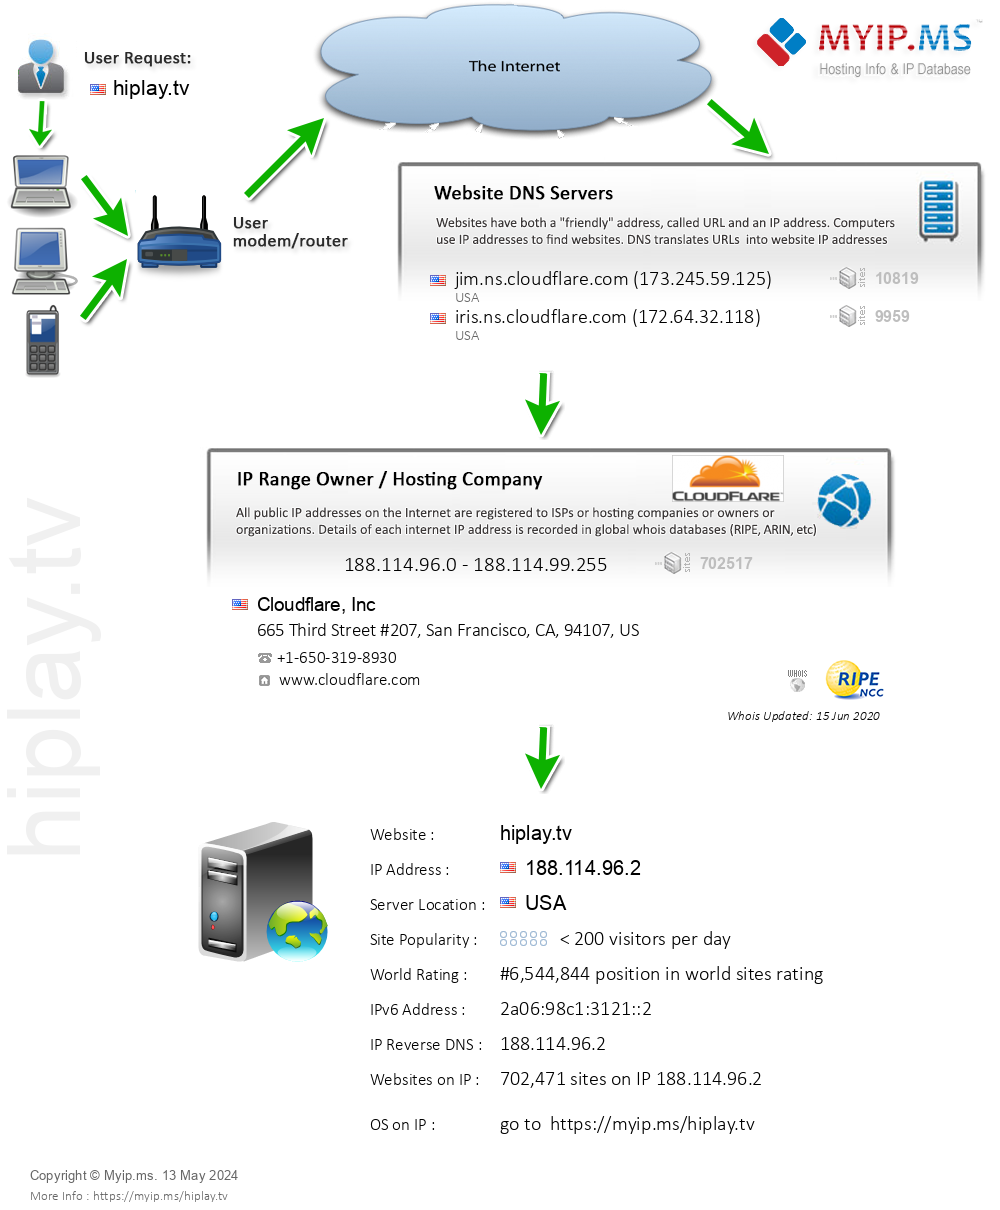 Hiplay.tv - Website Hosting Visual IP Diagram